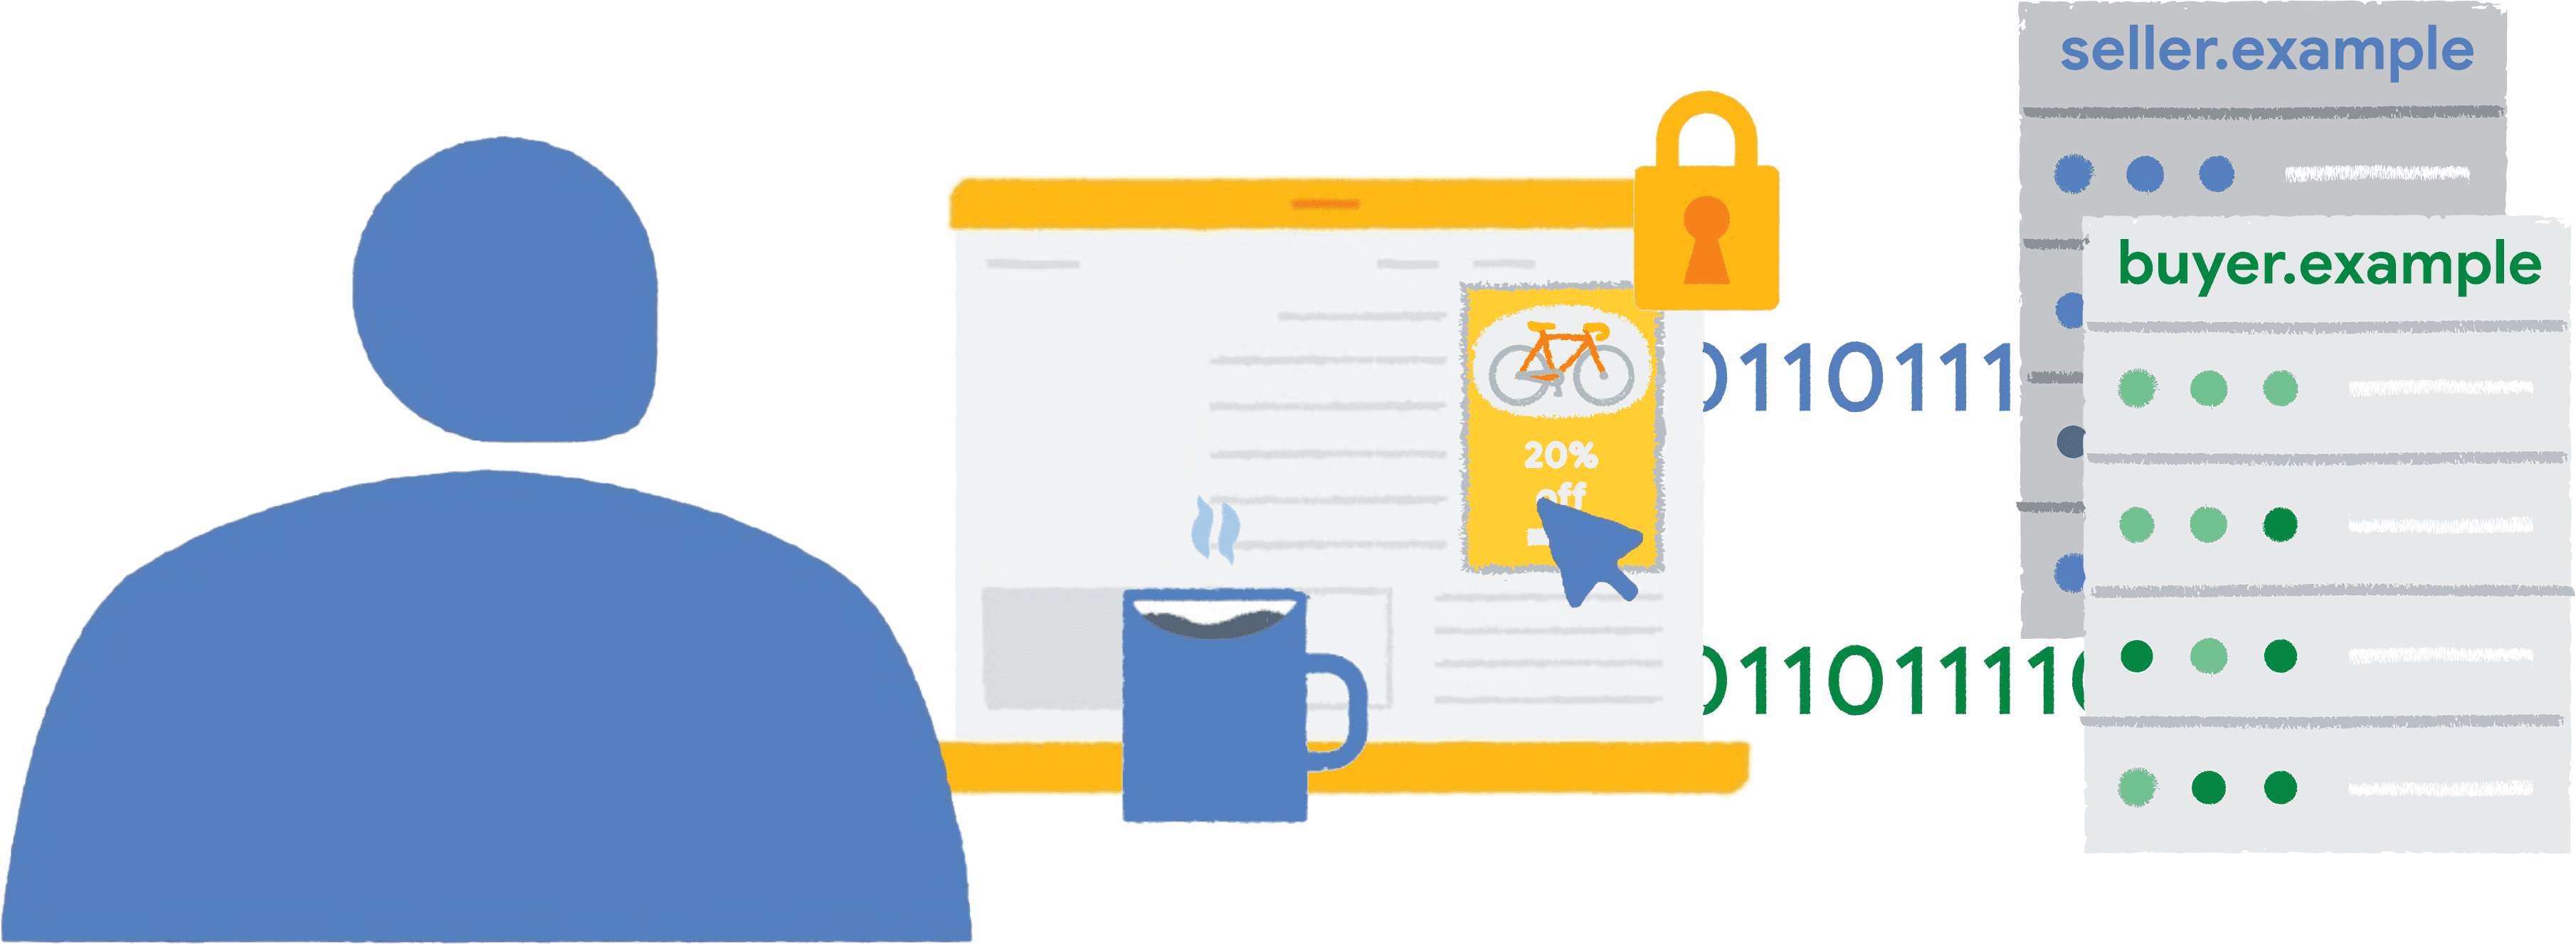 شخصی روی یک تبلیغ دوچرخه که با یک قاب حصاردار تعبیه شده در یک وب سایت خبری کلیک می کند. داده های گزارش برای فروشنده و خریداران ارسال می شود.